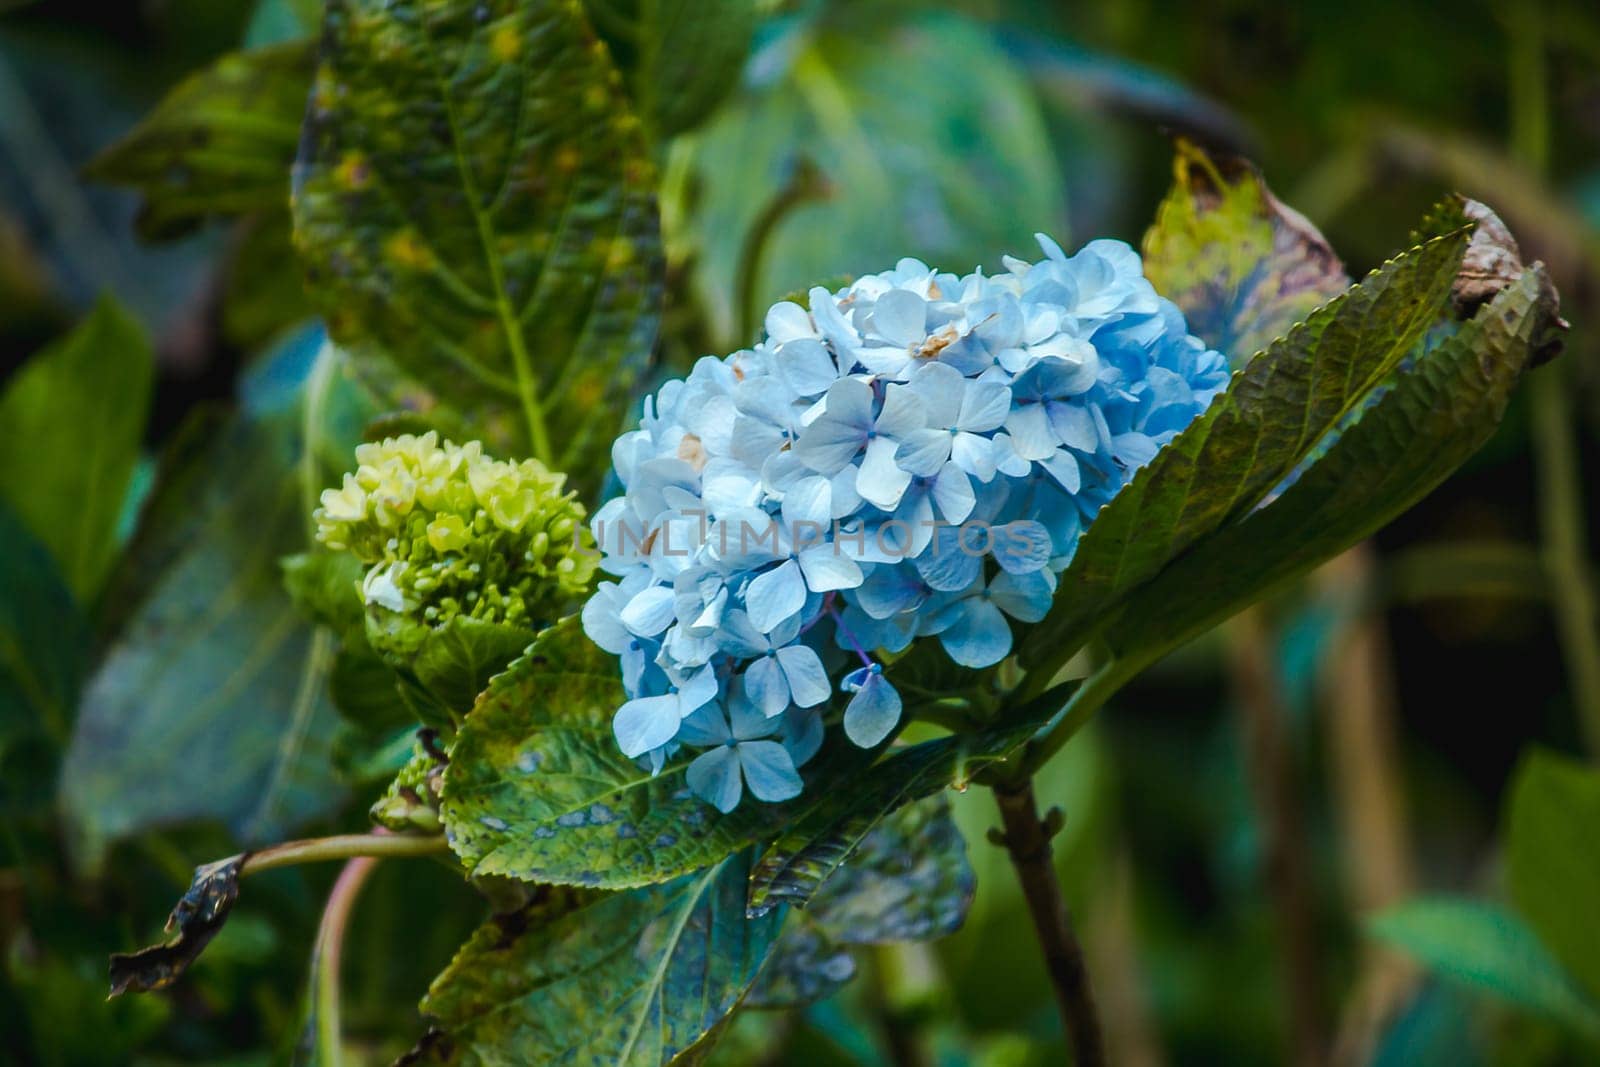 Blue Hydrangea flowers blooming in a garden. by Puripatt